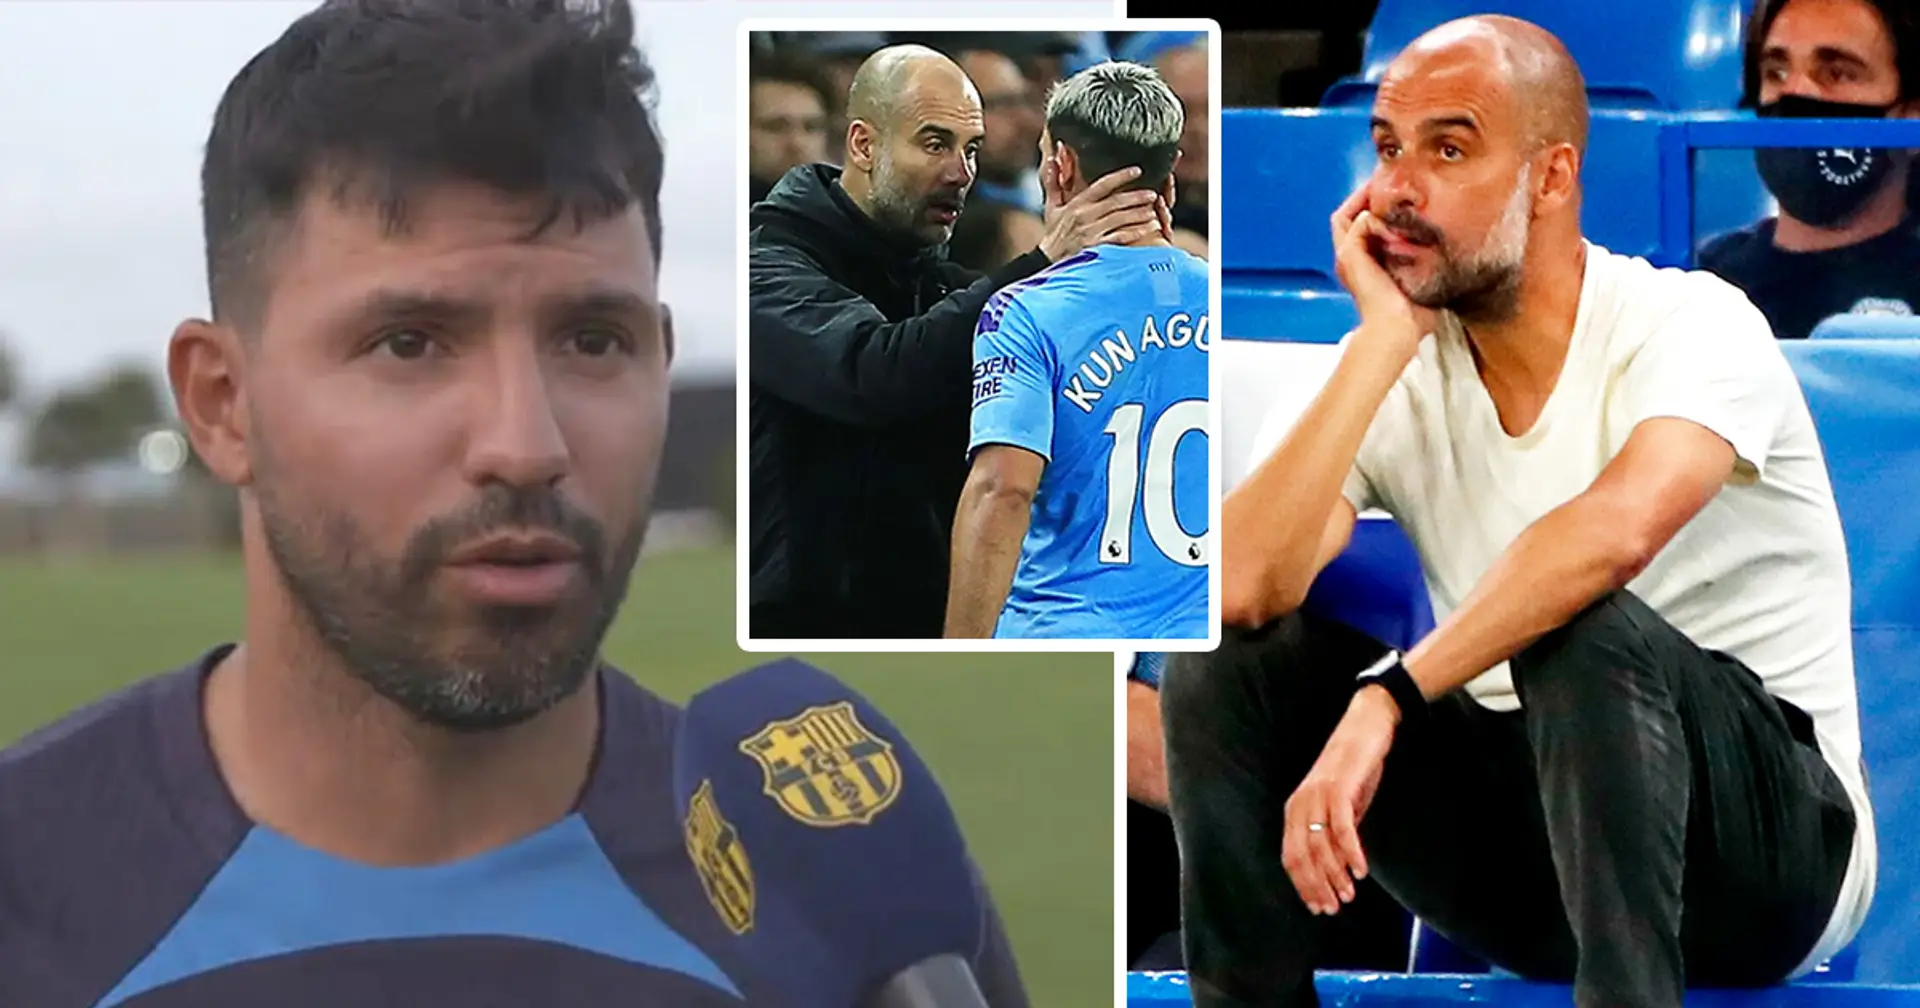 "Il y a des moments où ils prennent des décisions étranges": Sergio Aguero dénonce les décisions de transfert "bizarres" de Man City